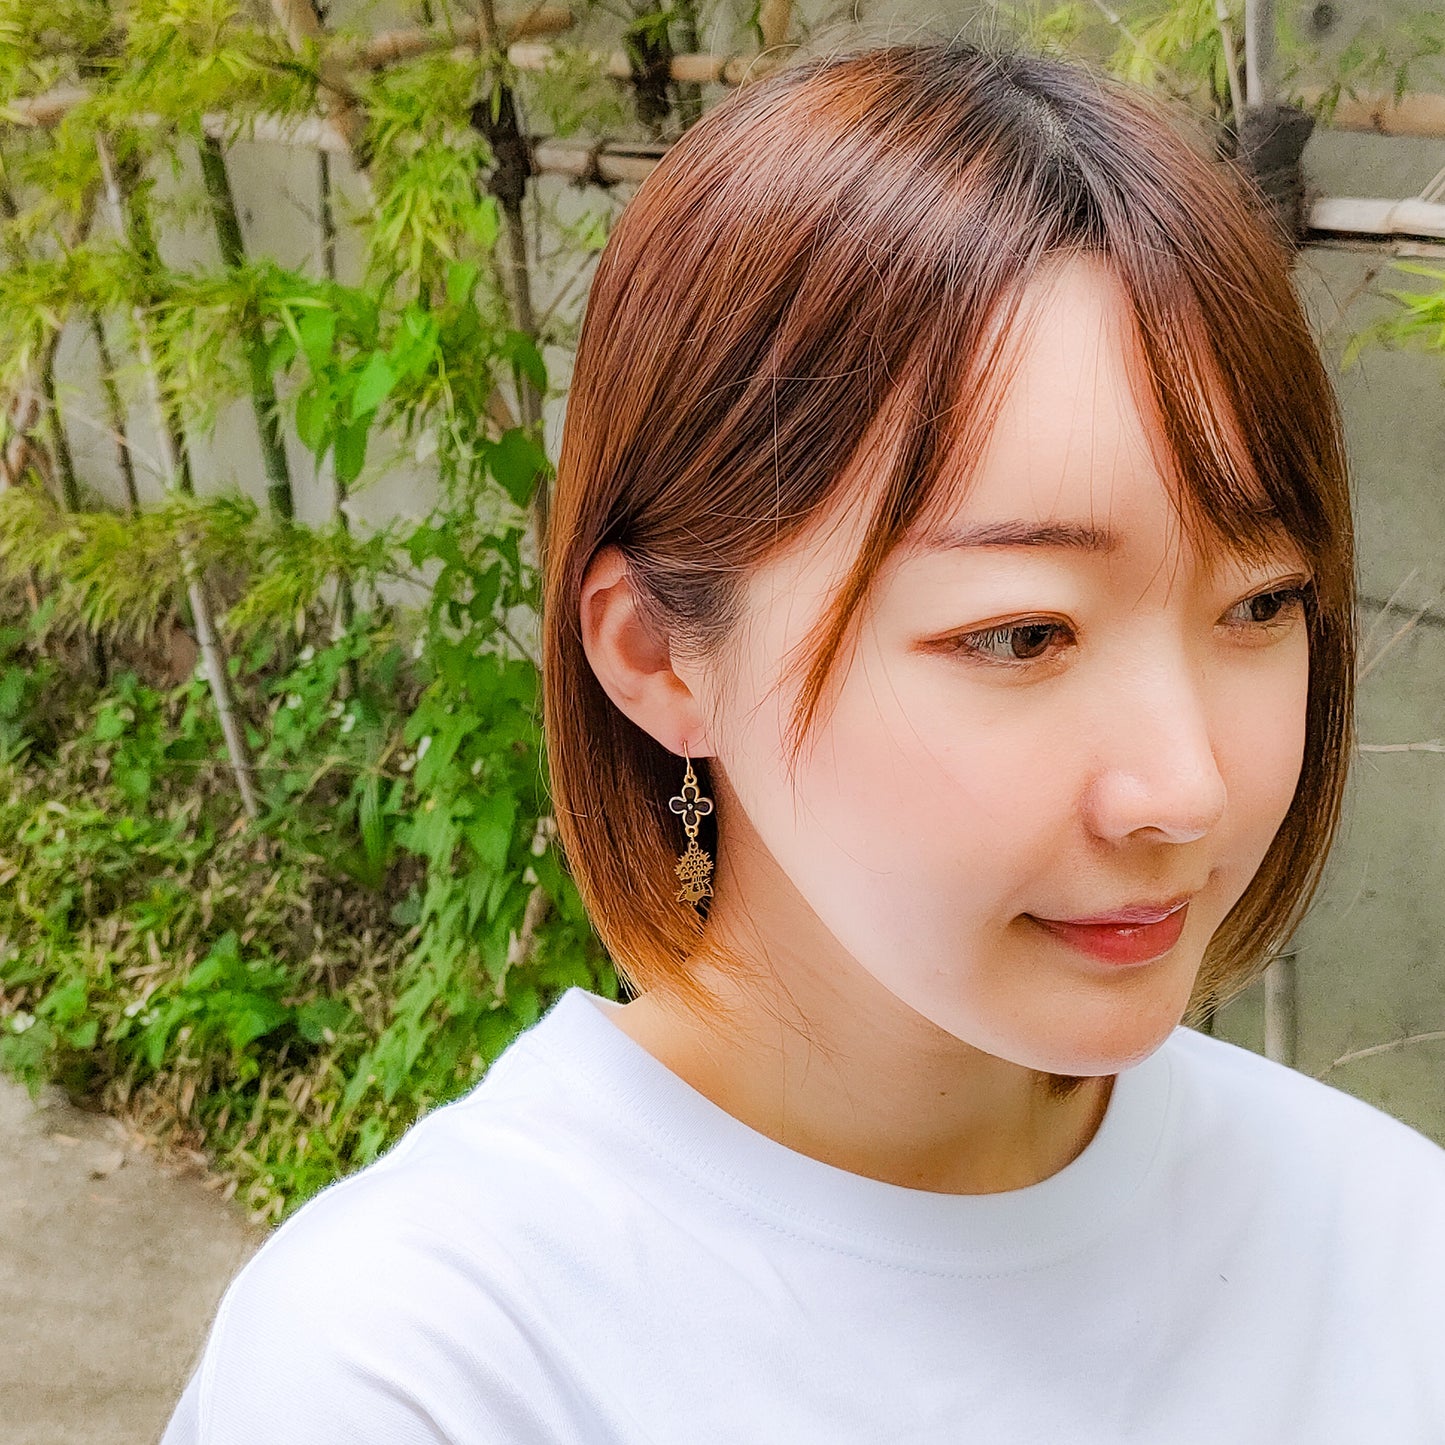 1-bamboos flower earrings